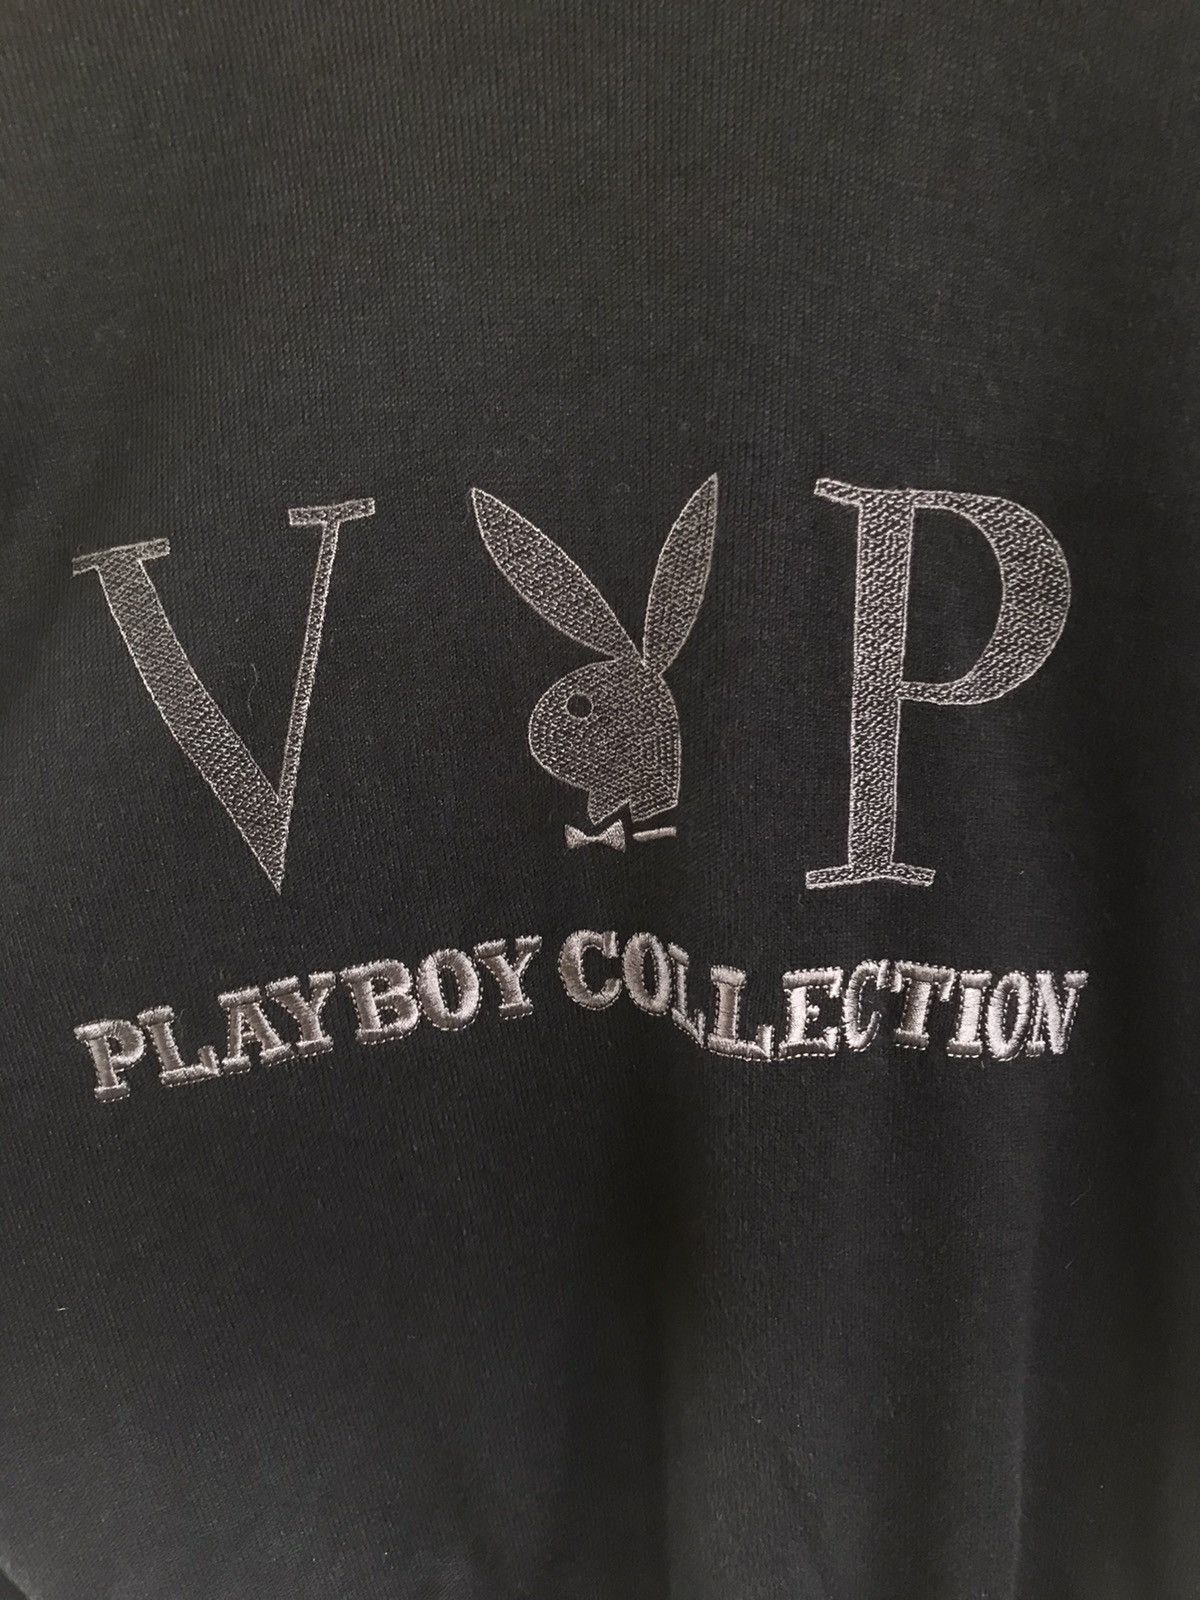 Vintage Playboy Collection Sweatshirt - 4